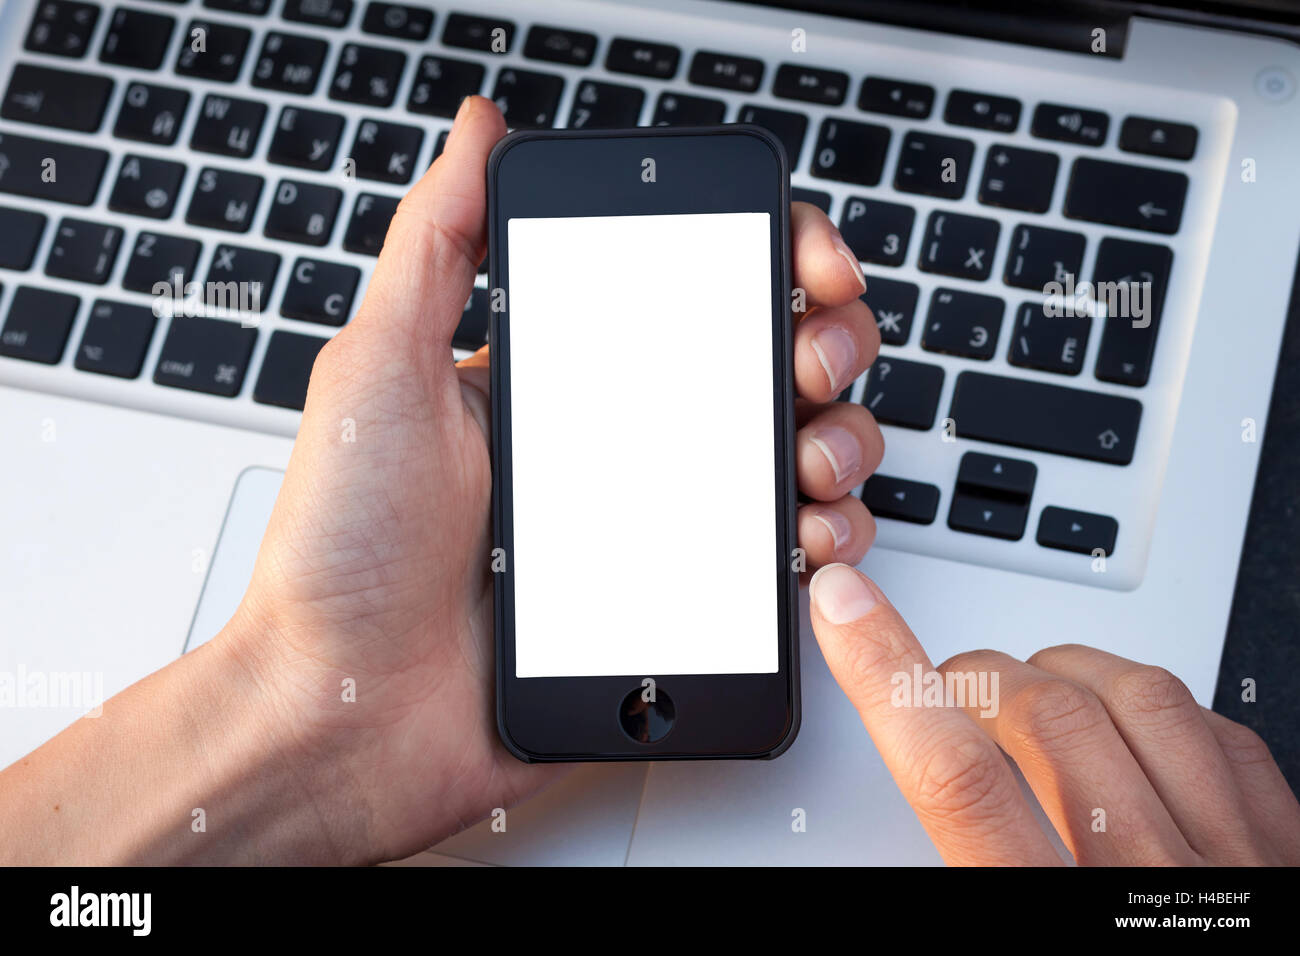 Donna mani dello smartphone mostrando la schermata bianca con la tastiera portatile in background Foto Stock